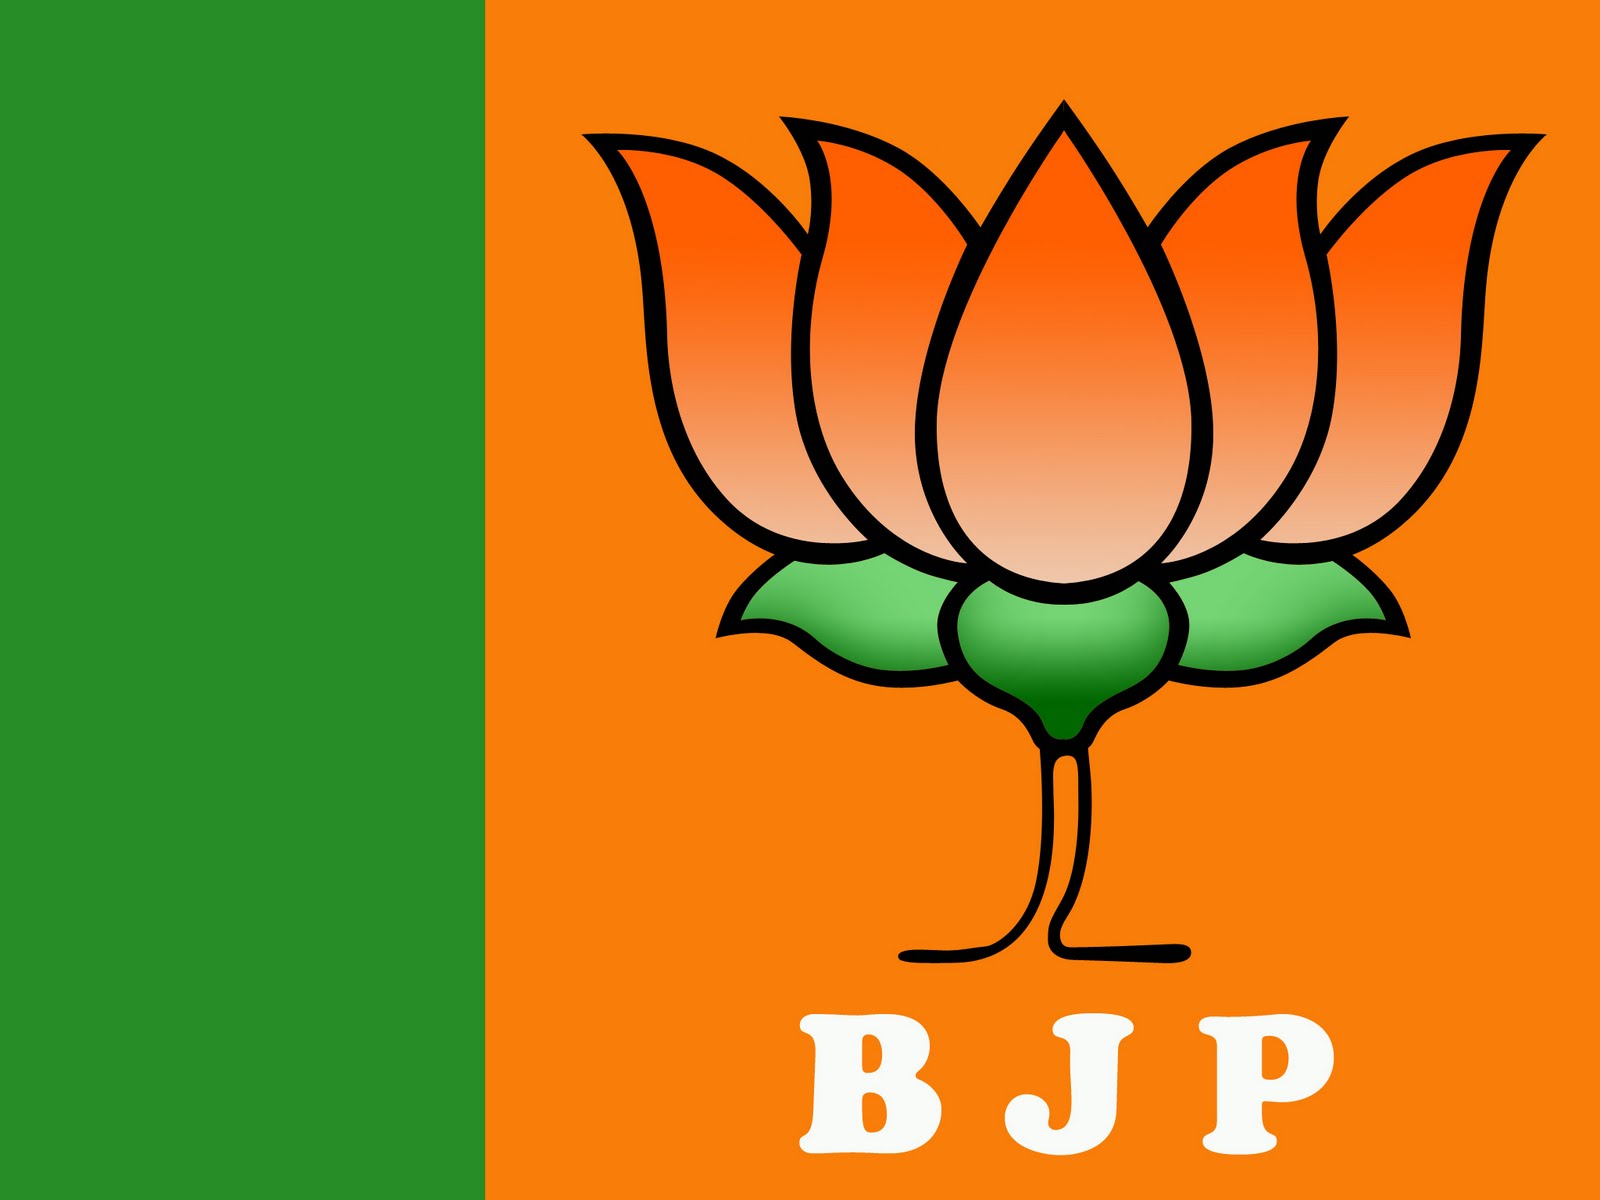 Free Indian Logos: BJP Symbol - BJP Logo